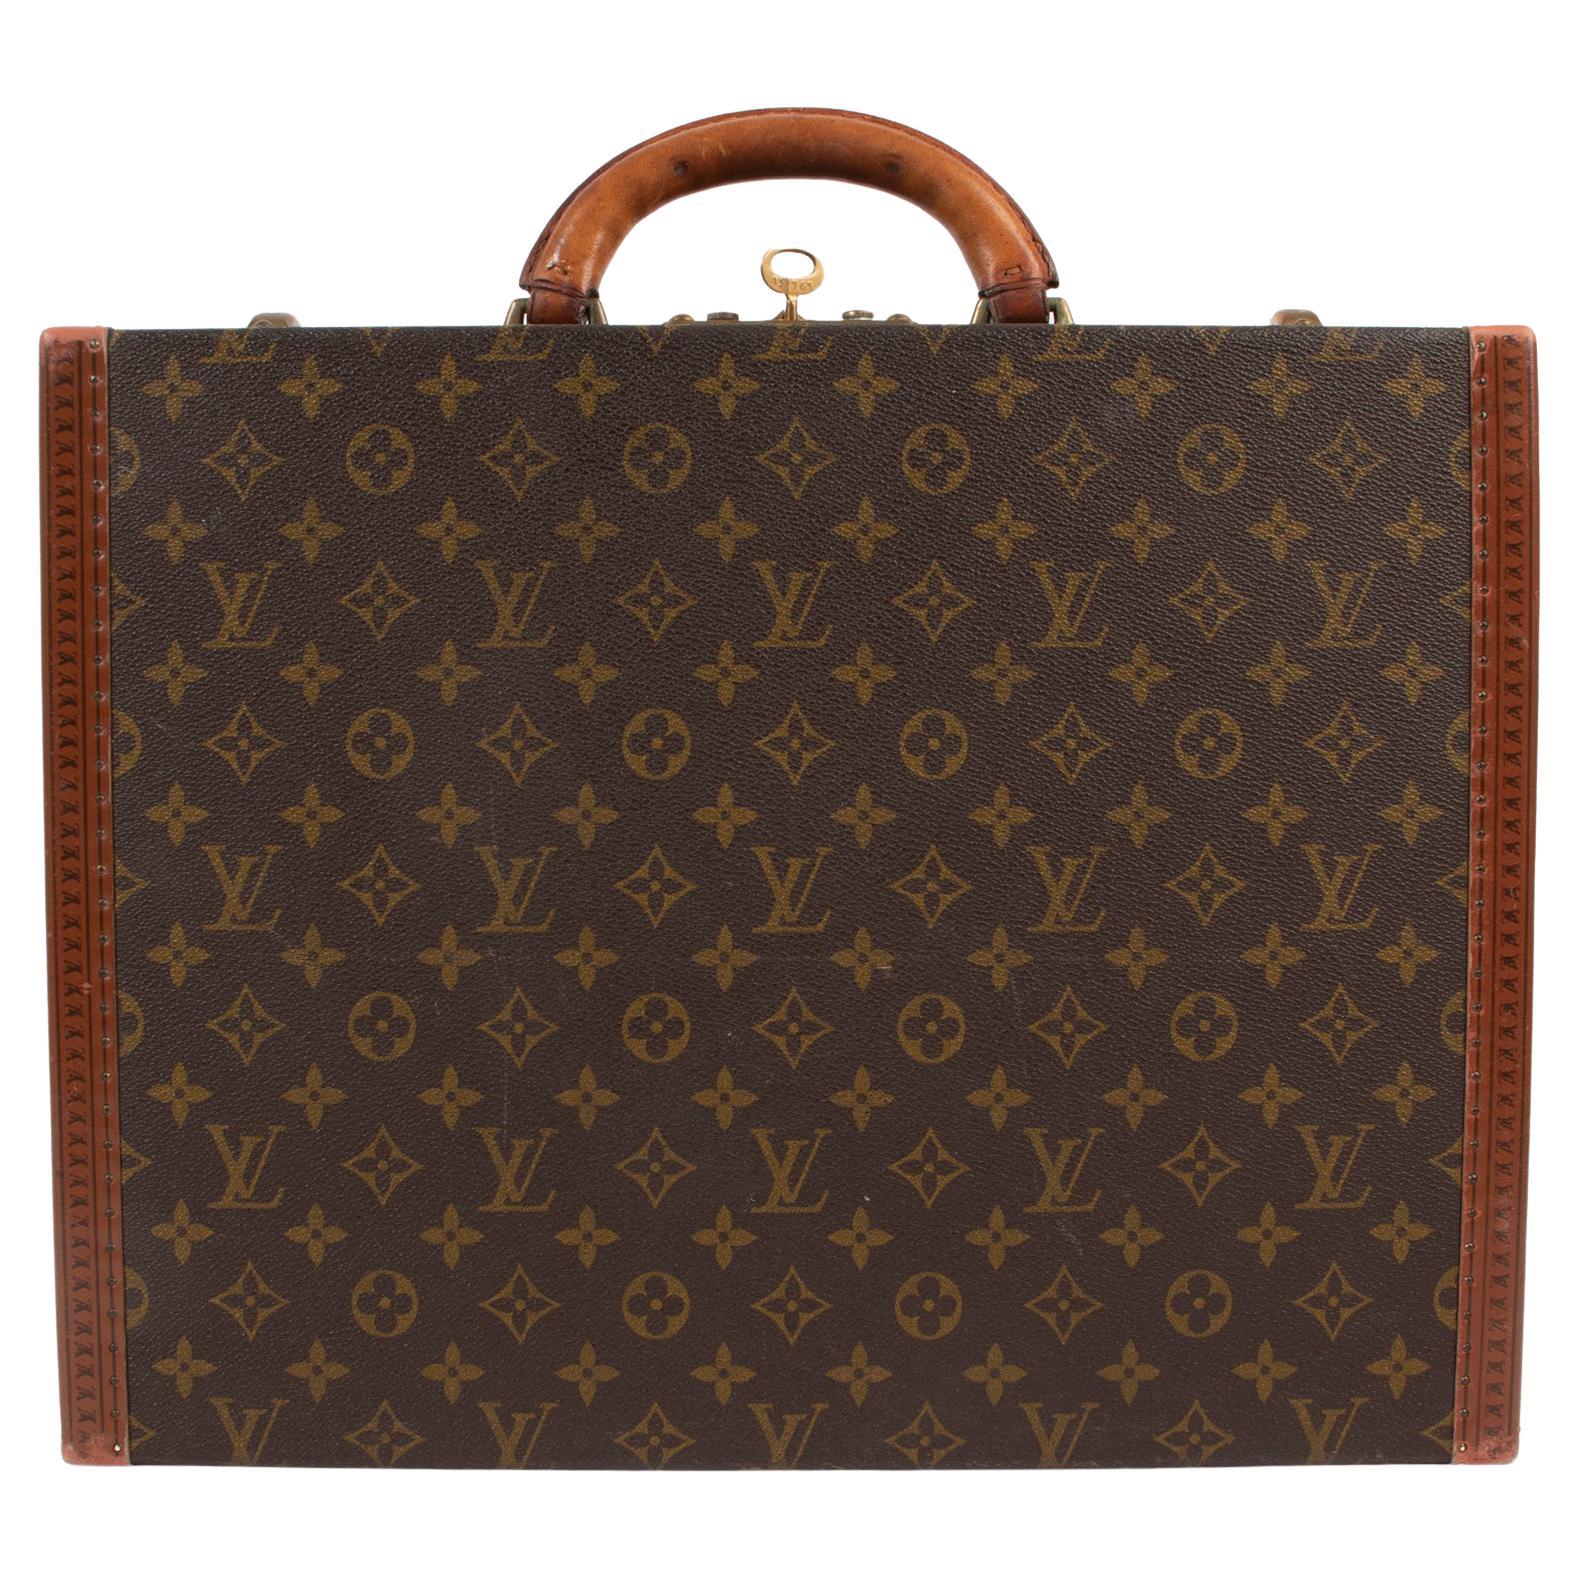 Louis Vuitton Excellent Condition Monogram Canvas Leather Trunk Travel ...